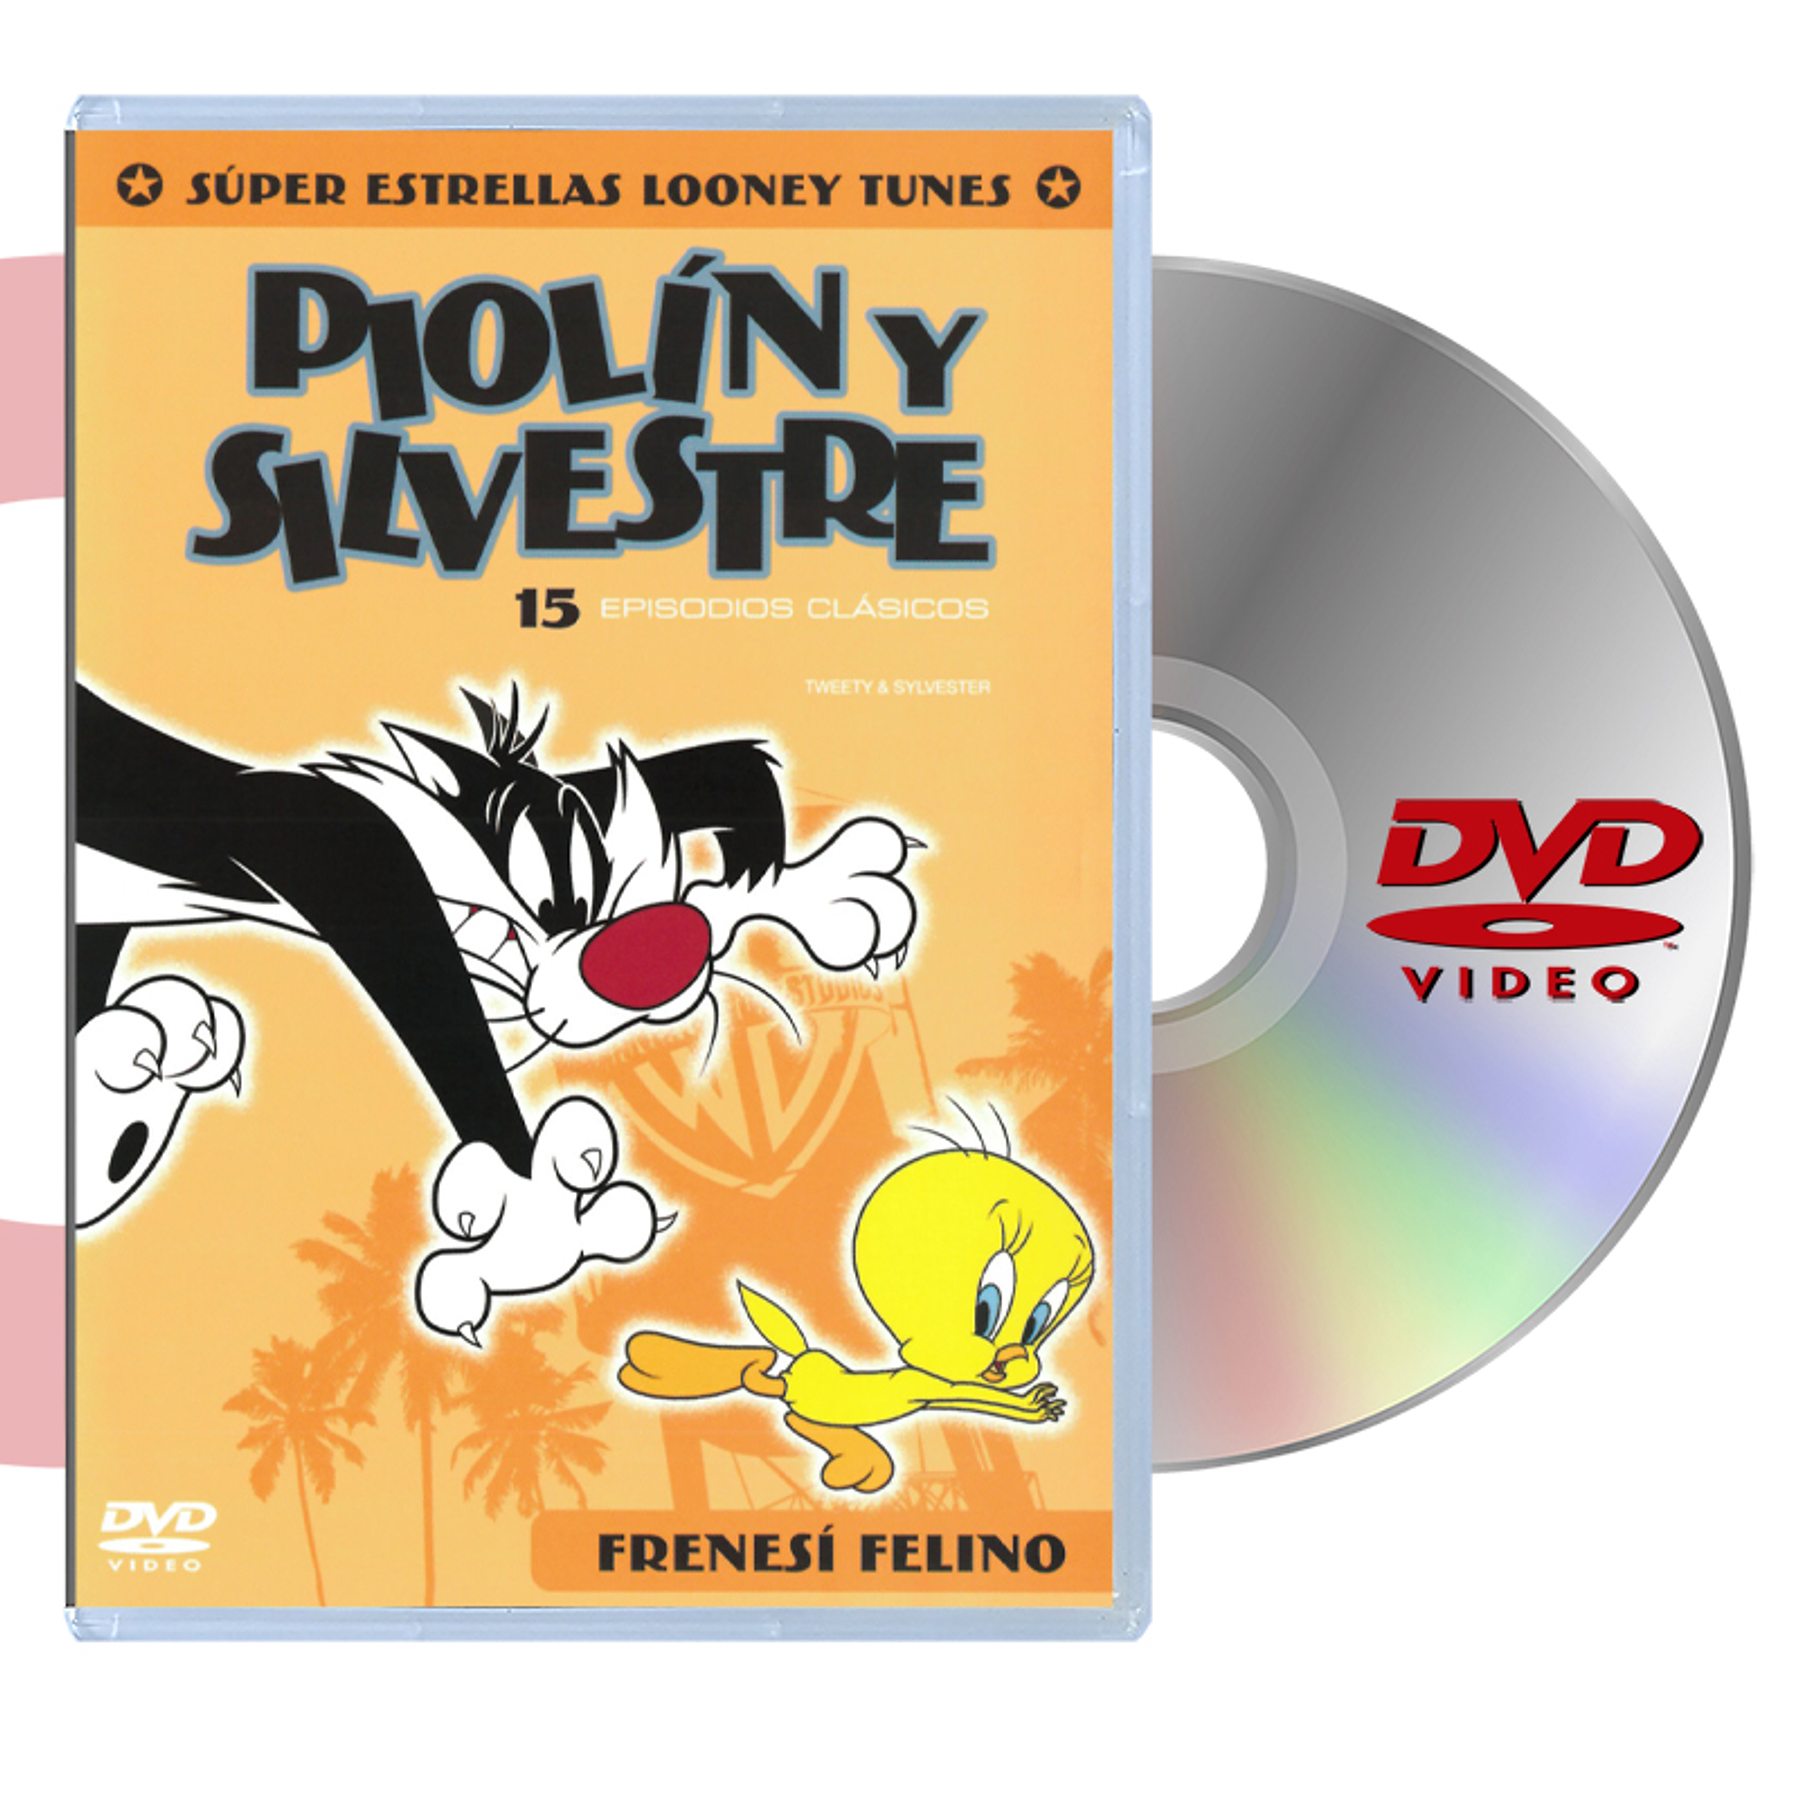 DVD LOONEY TUNES PIOLIN Y SILVESTRE SUPER ESTRELLA